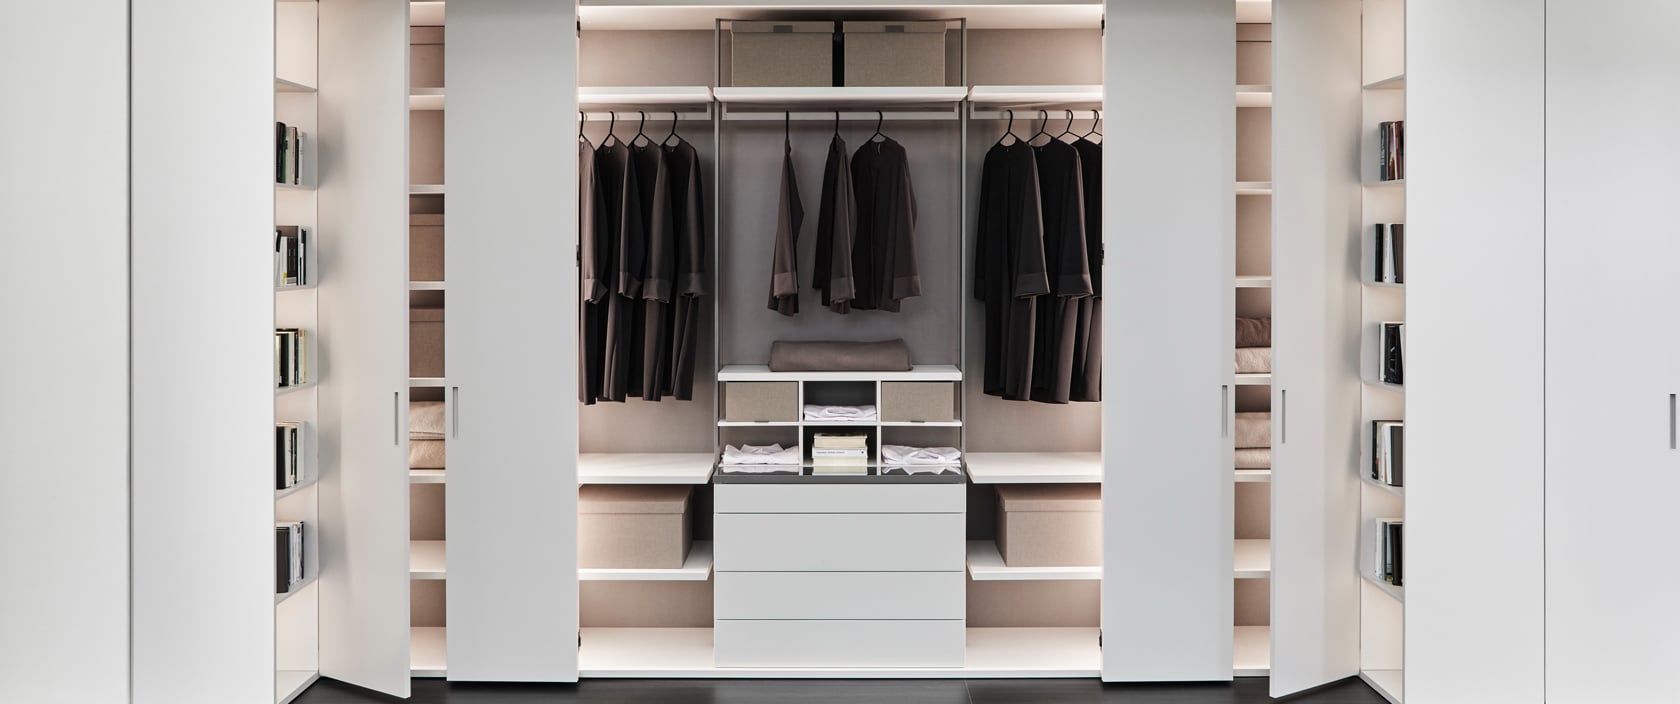 Large luxury white closet with customized modules